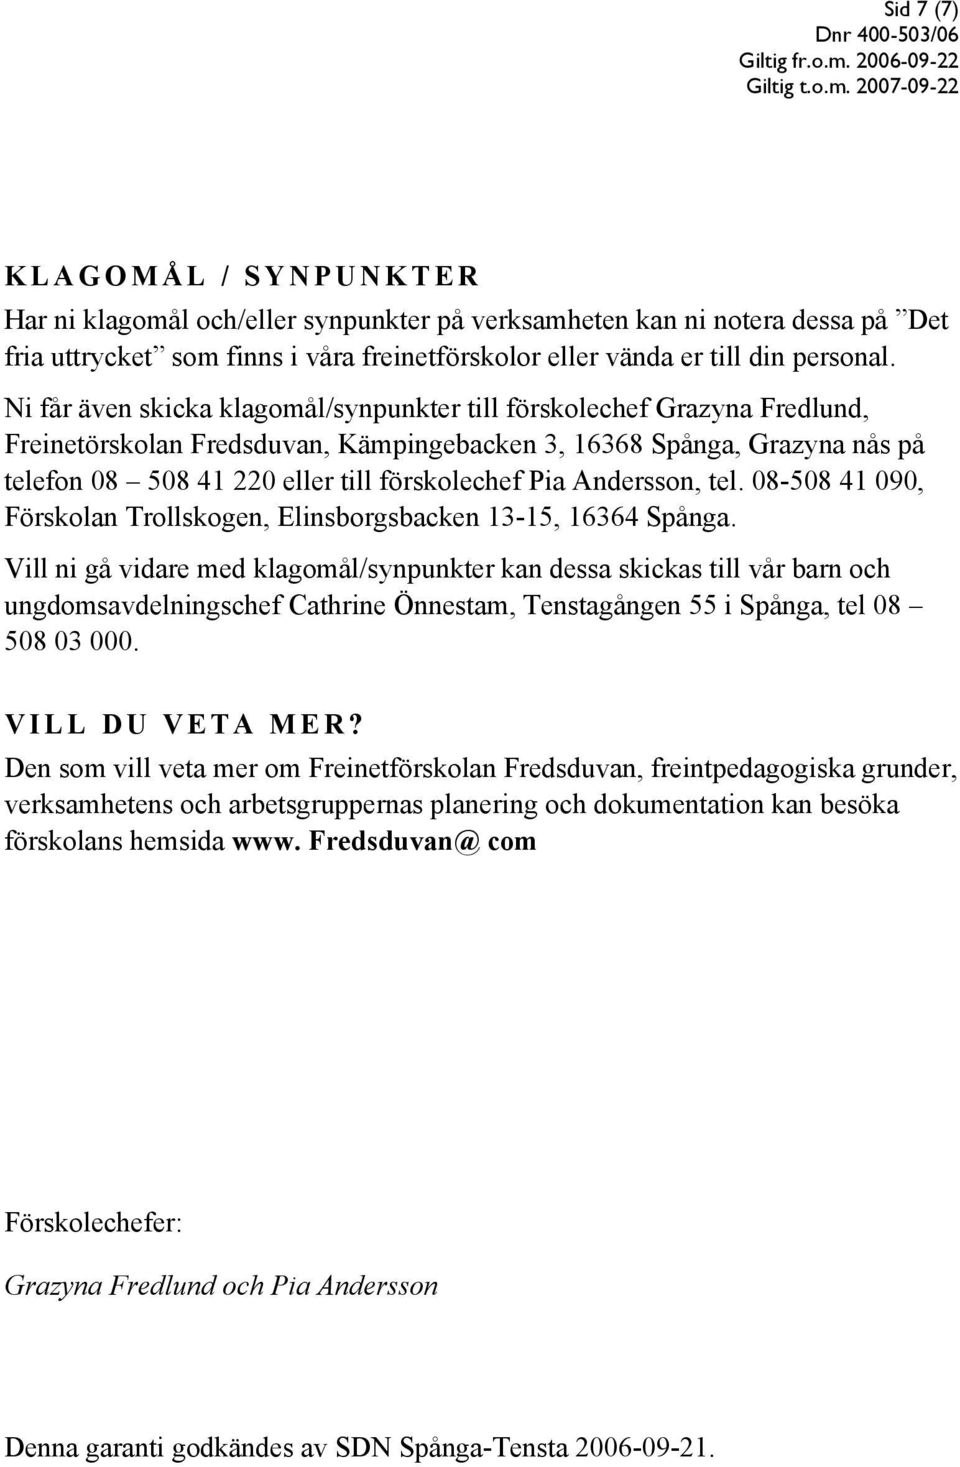 Andersson, tel. 08-508 41 090, Förskolan Trollskogen, Elinsborgsbacken 13-15, 16364 Spånga.